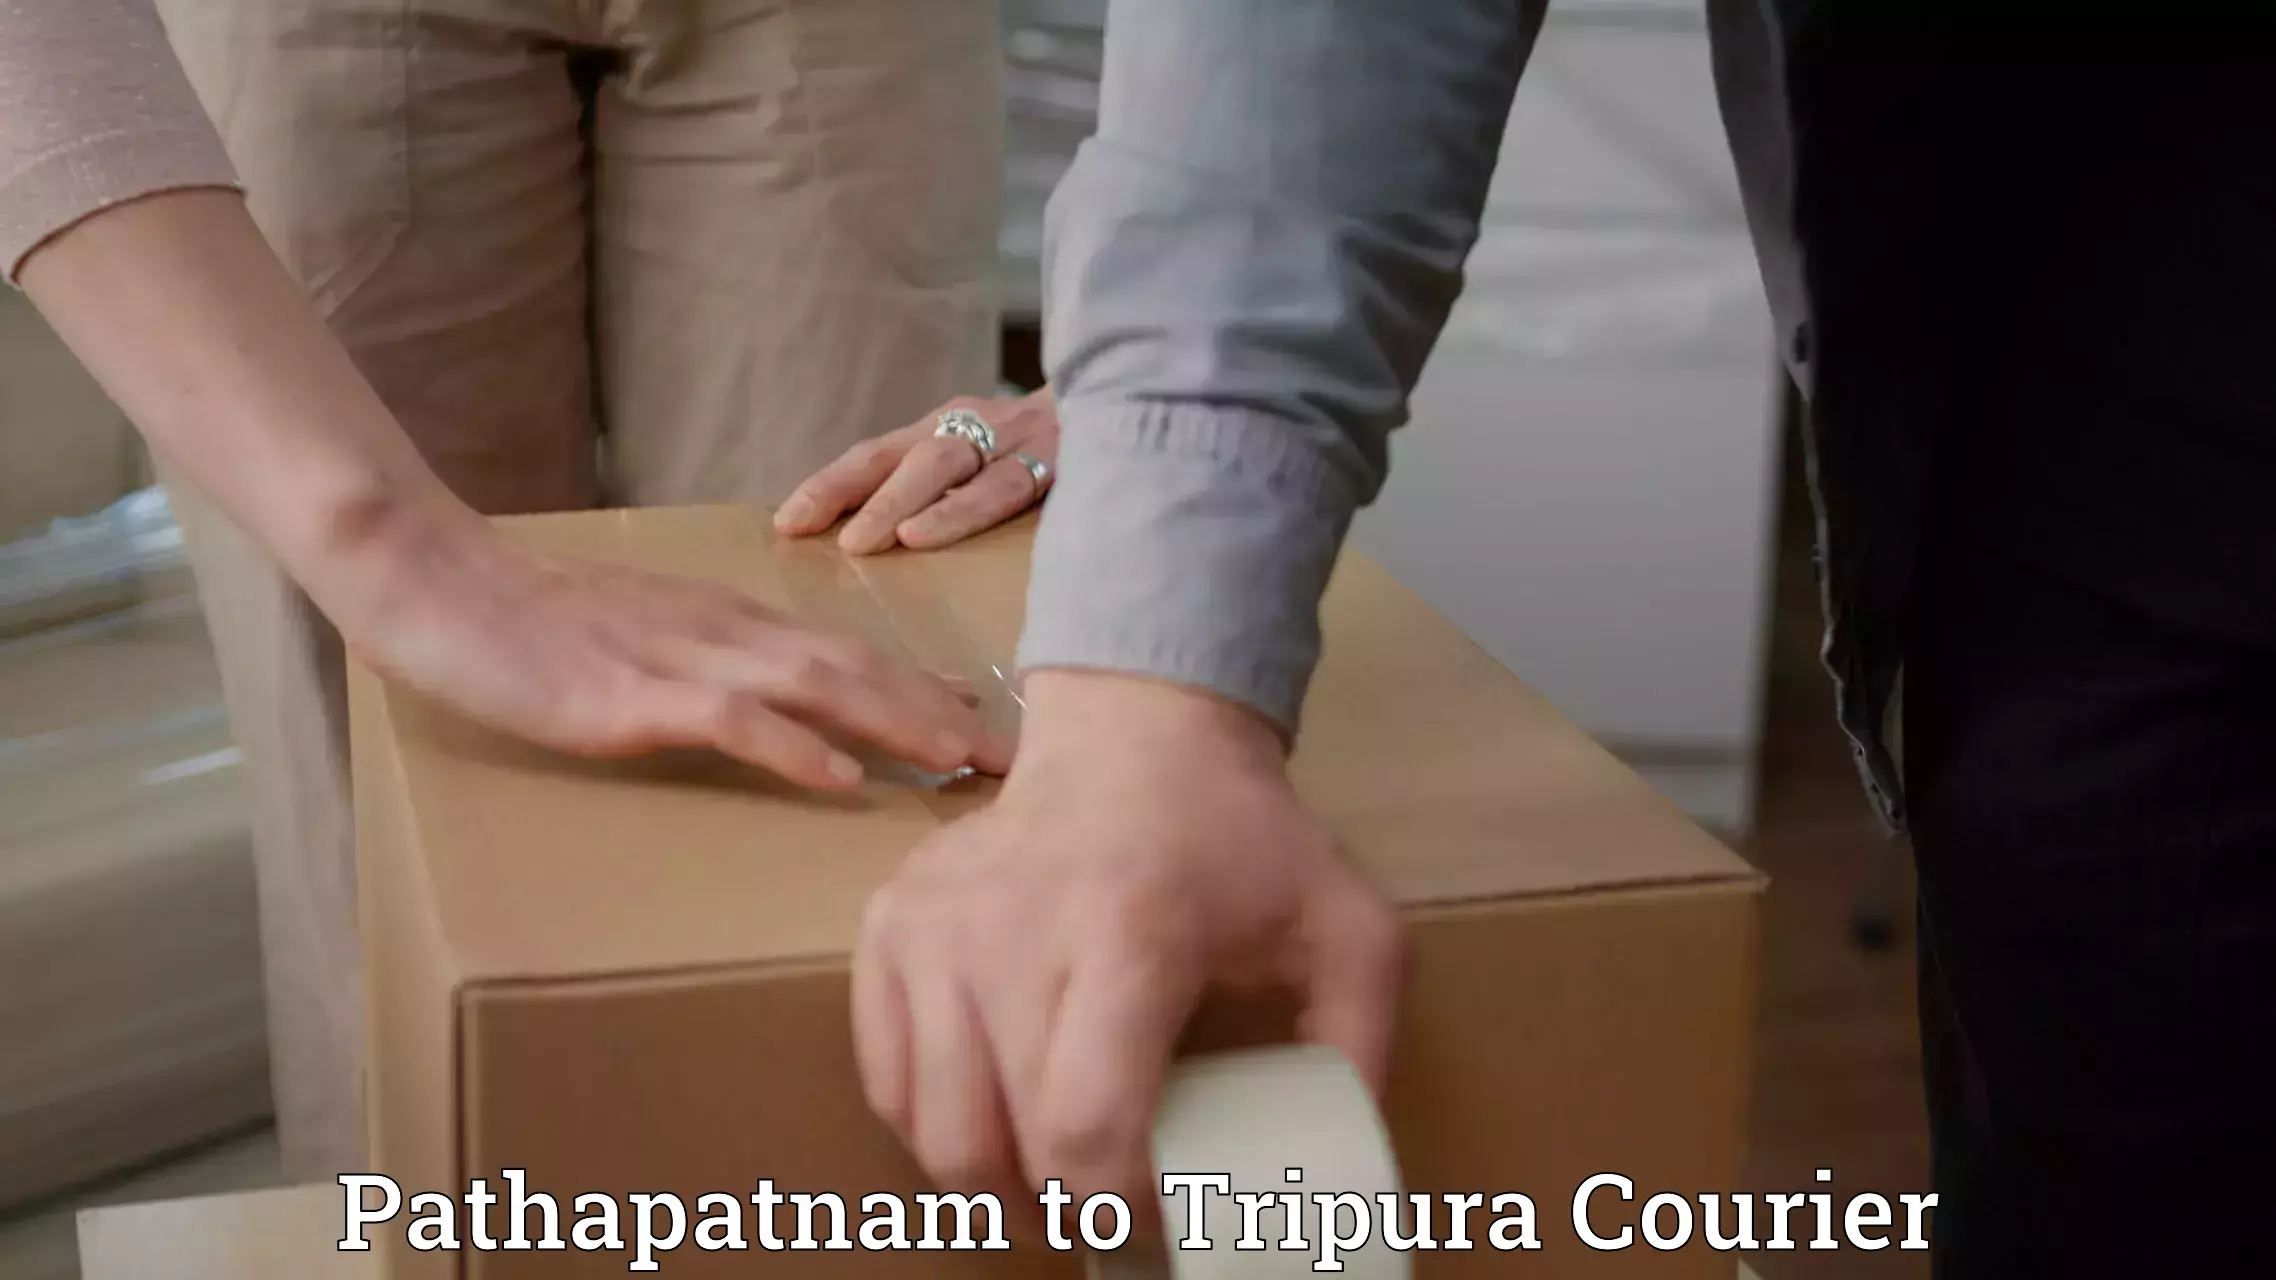 Efficient parcel service Pathapatnam to Tripura